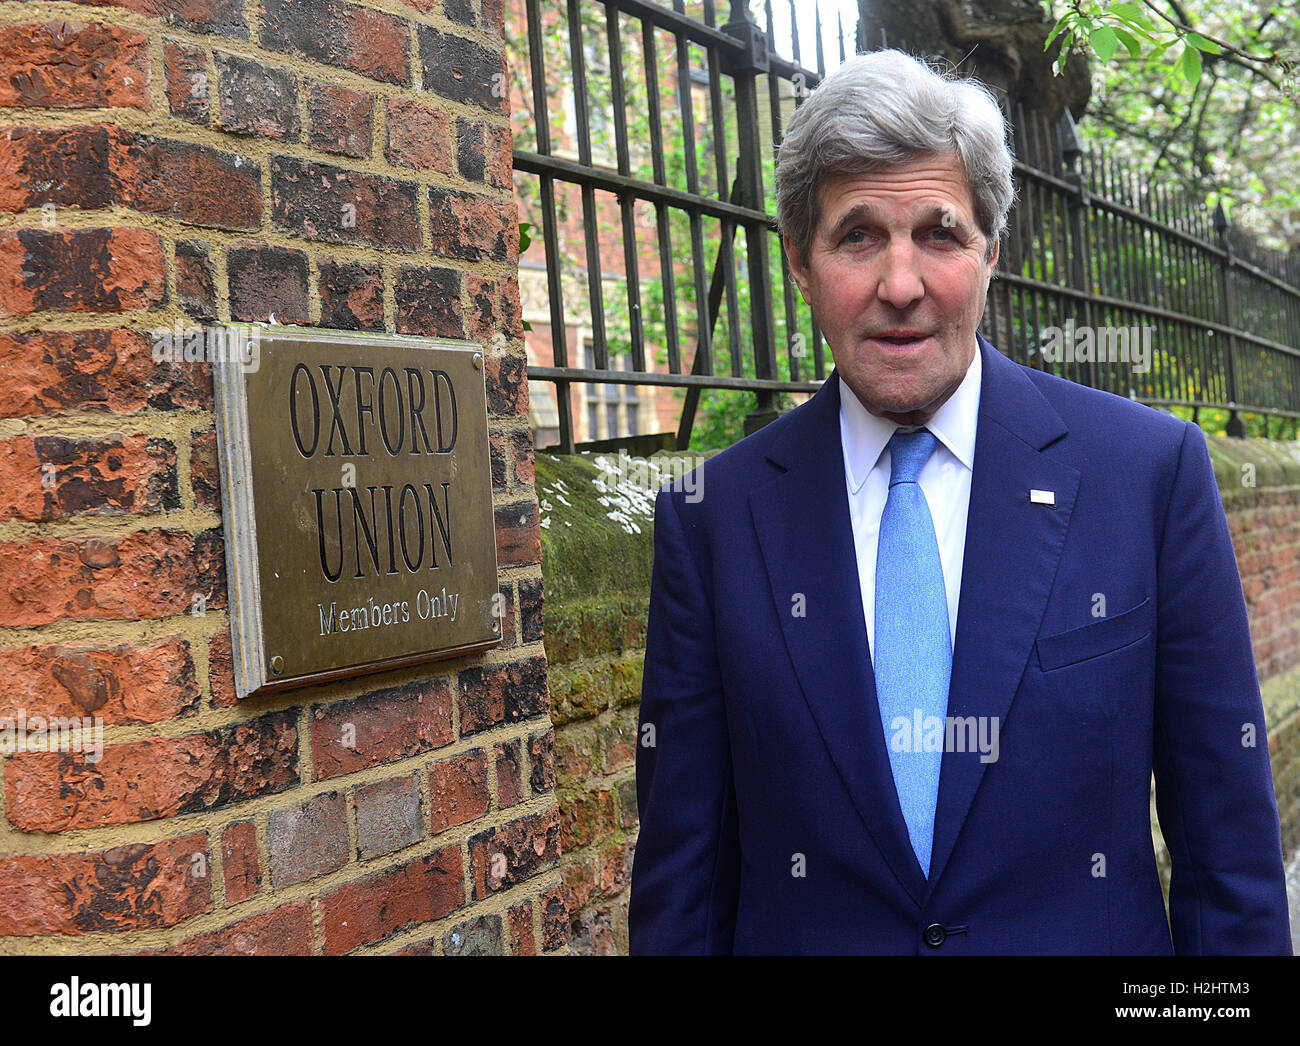 John Kerry, secrétaire d'État des États-Unis à l'étudiant d'oxford union européenne 11e ma 2016 Banque D'Images